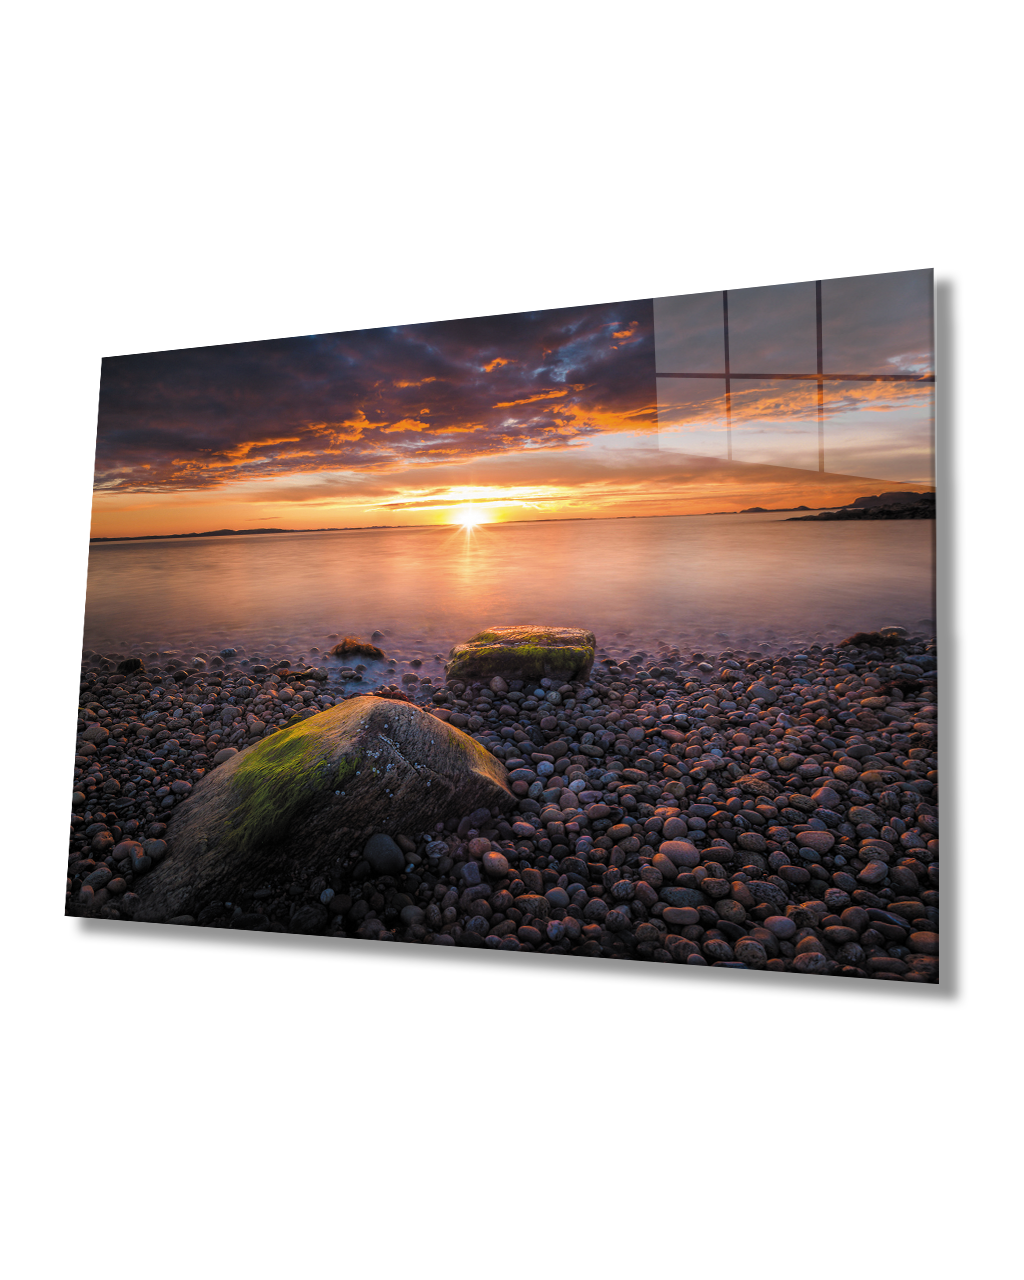 Deniz Taşlar Gün Batımı Cam Tablo  4mm Dayanıklı Temperli Cam Sea Stones Sunset Glass Table 4mm Durable Tempered Glass